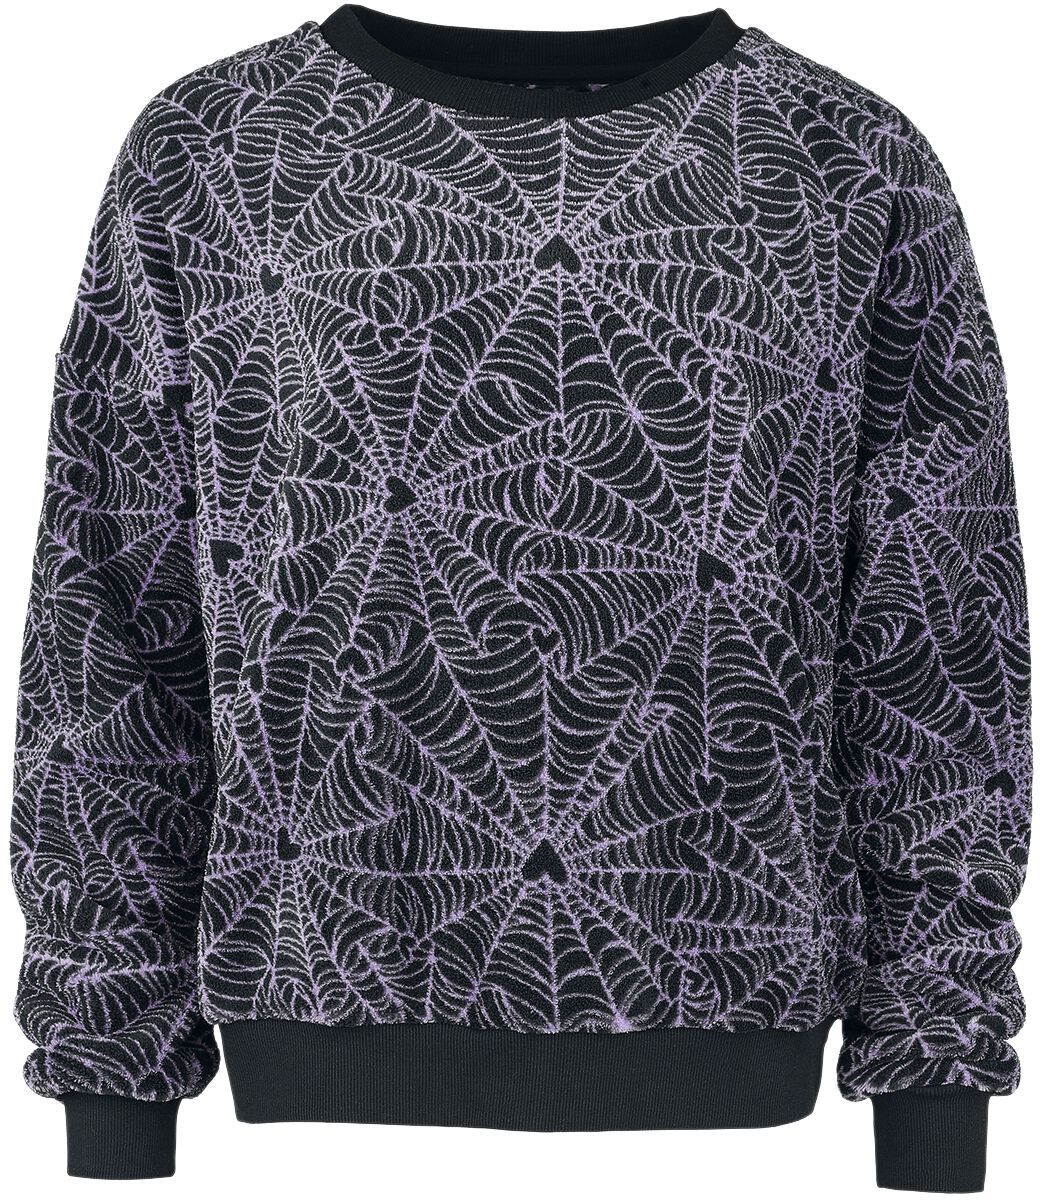 Full Volume by EMP Sweatshirt - Spider Web Sweatshirt - M bis XL - für Damen - Größe M - schwarz